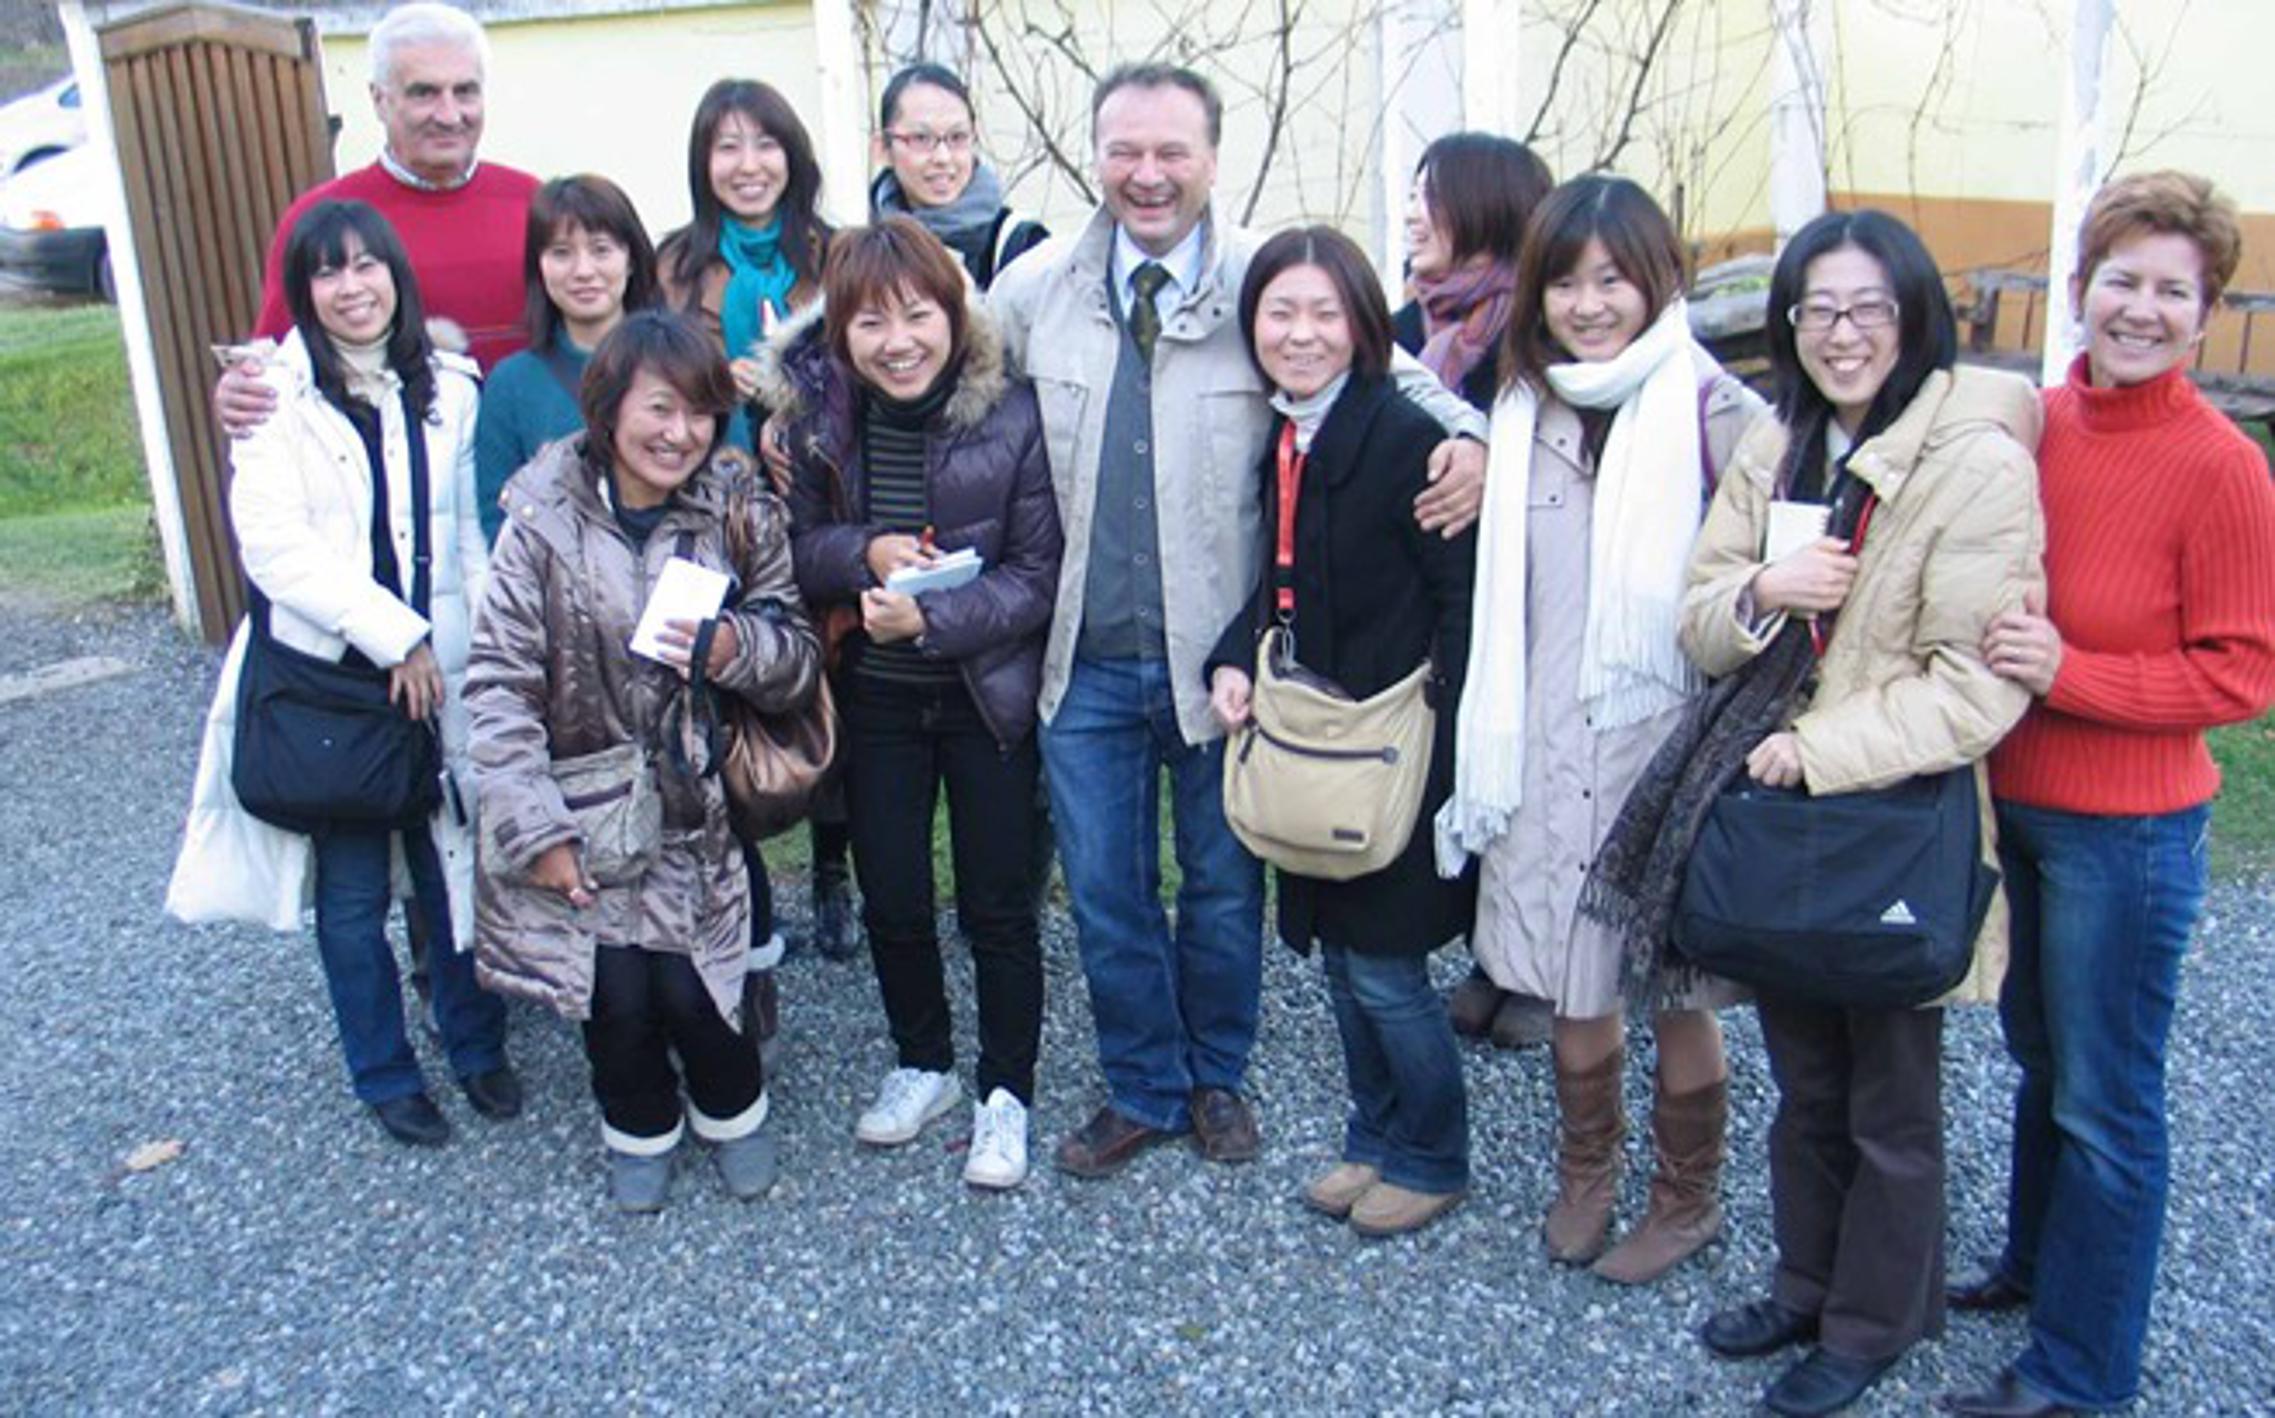 Antun Tucić i Pero Huljić s novinarkama japanskih medija u Staroj Kapeli